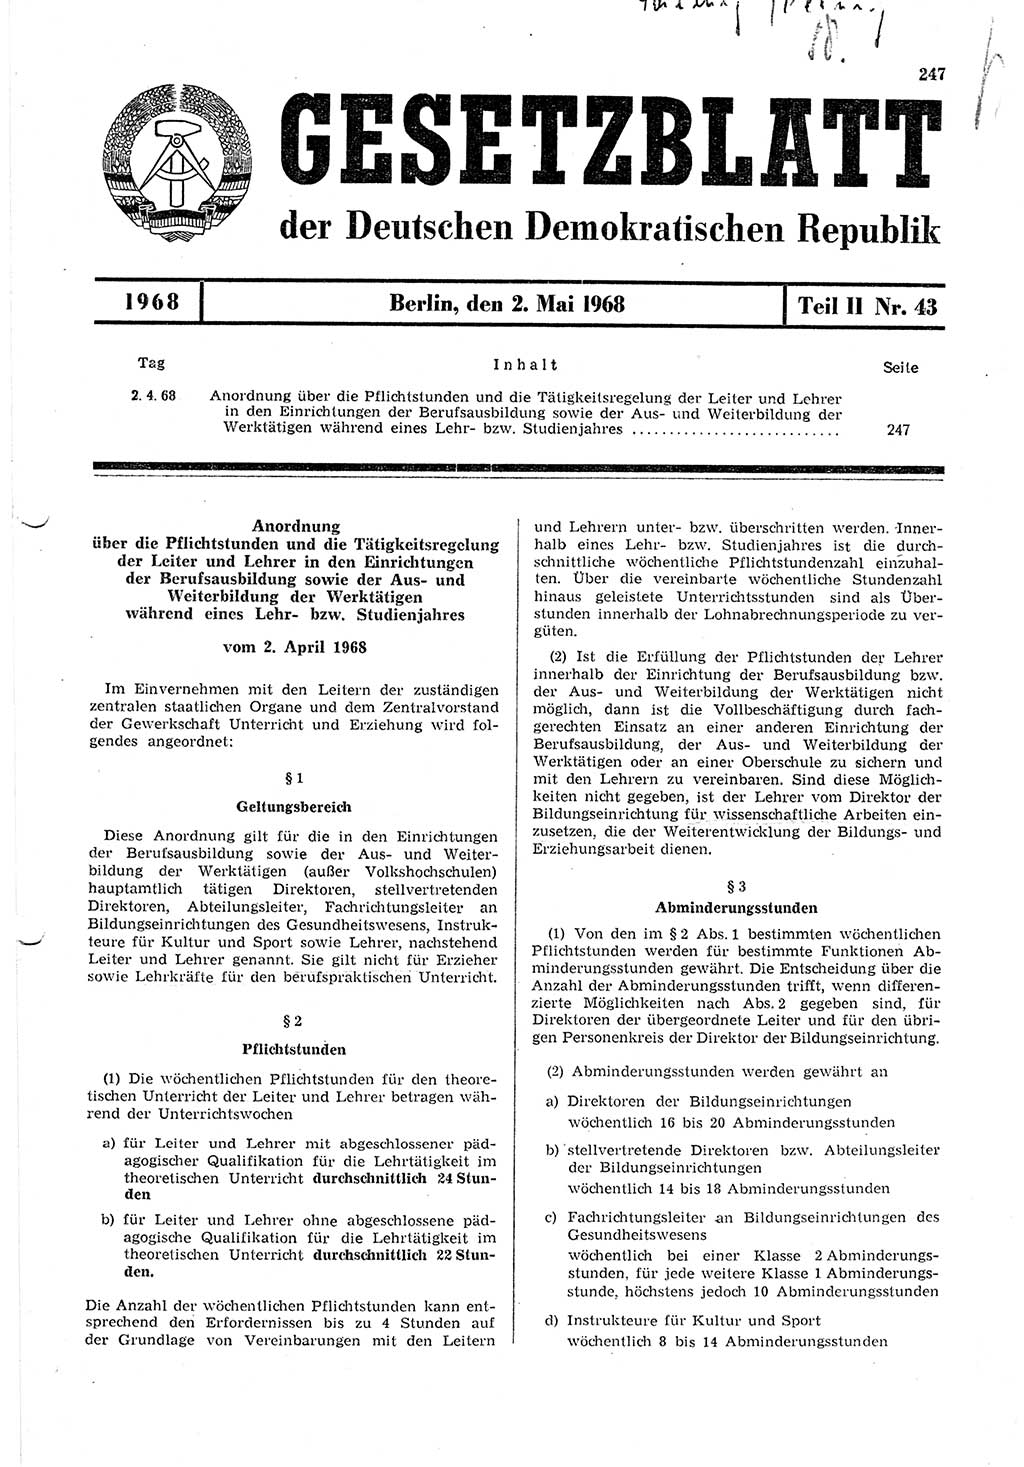 Gesetzblatt (GBl.) der Deutschen Demokratischen Republik (DDR) Teil ⅠⅠ 1968, Seite 247 (GBl. DDR ⅠⅠ 1968, S. 247)